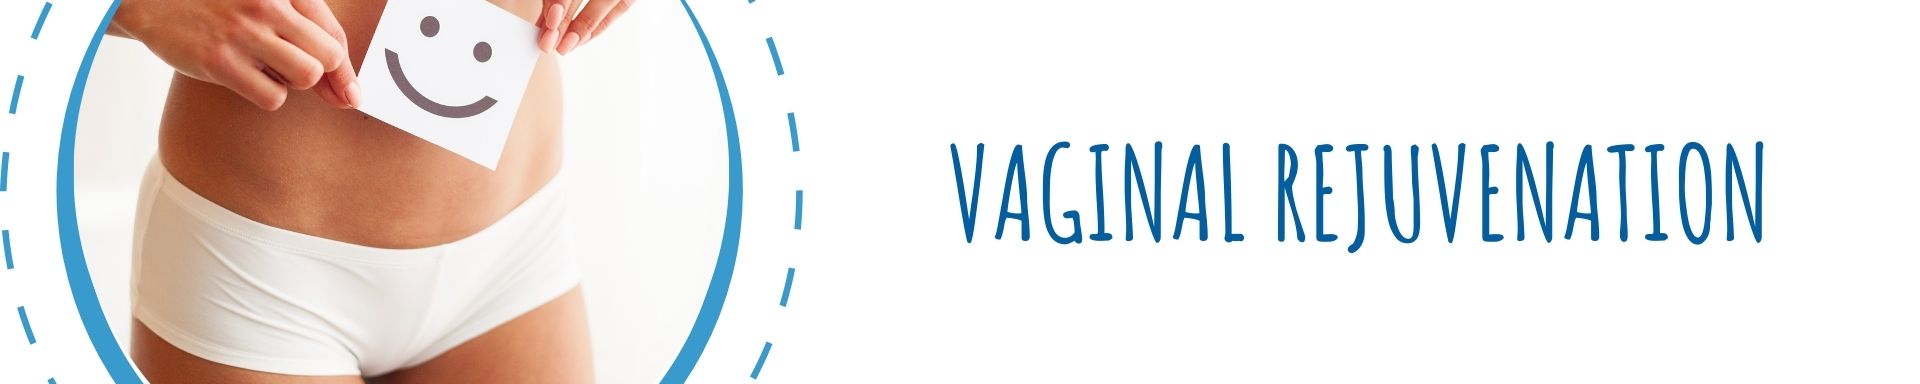 Vaginal Rejuvenation Page Header